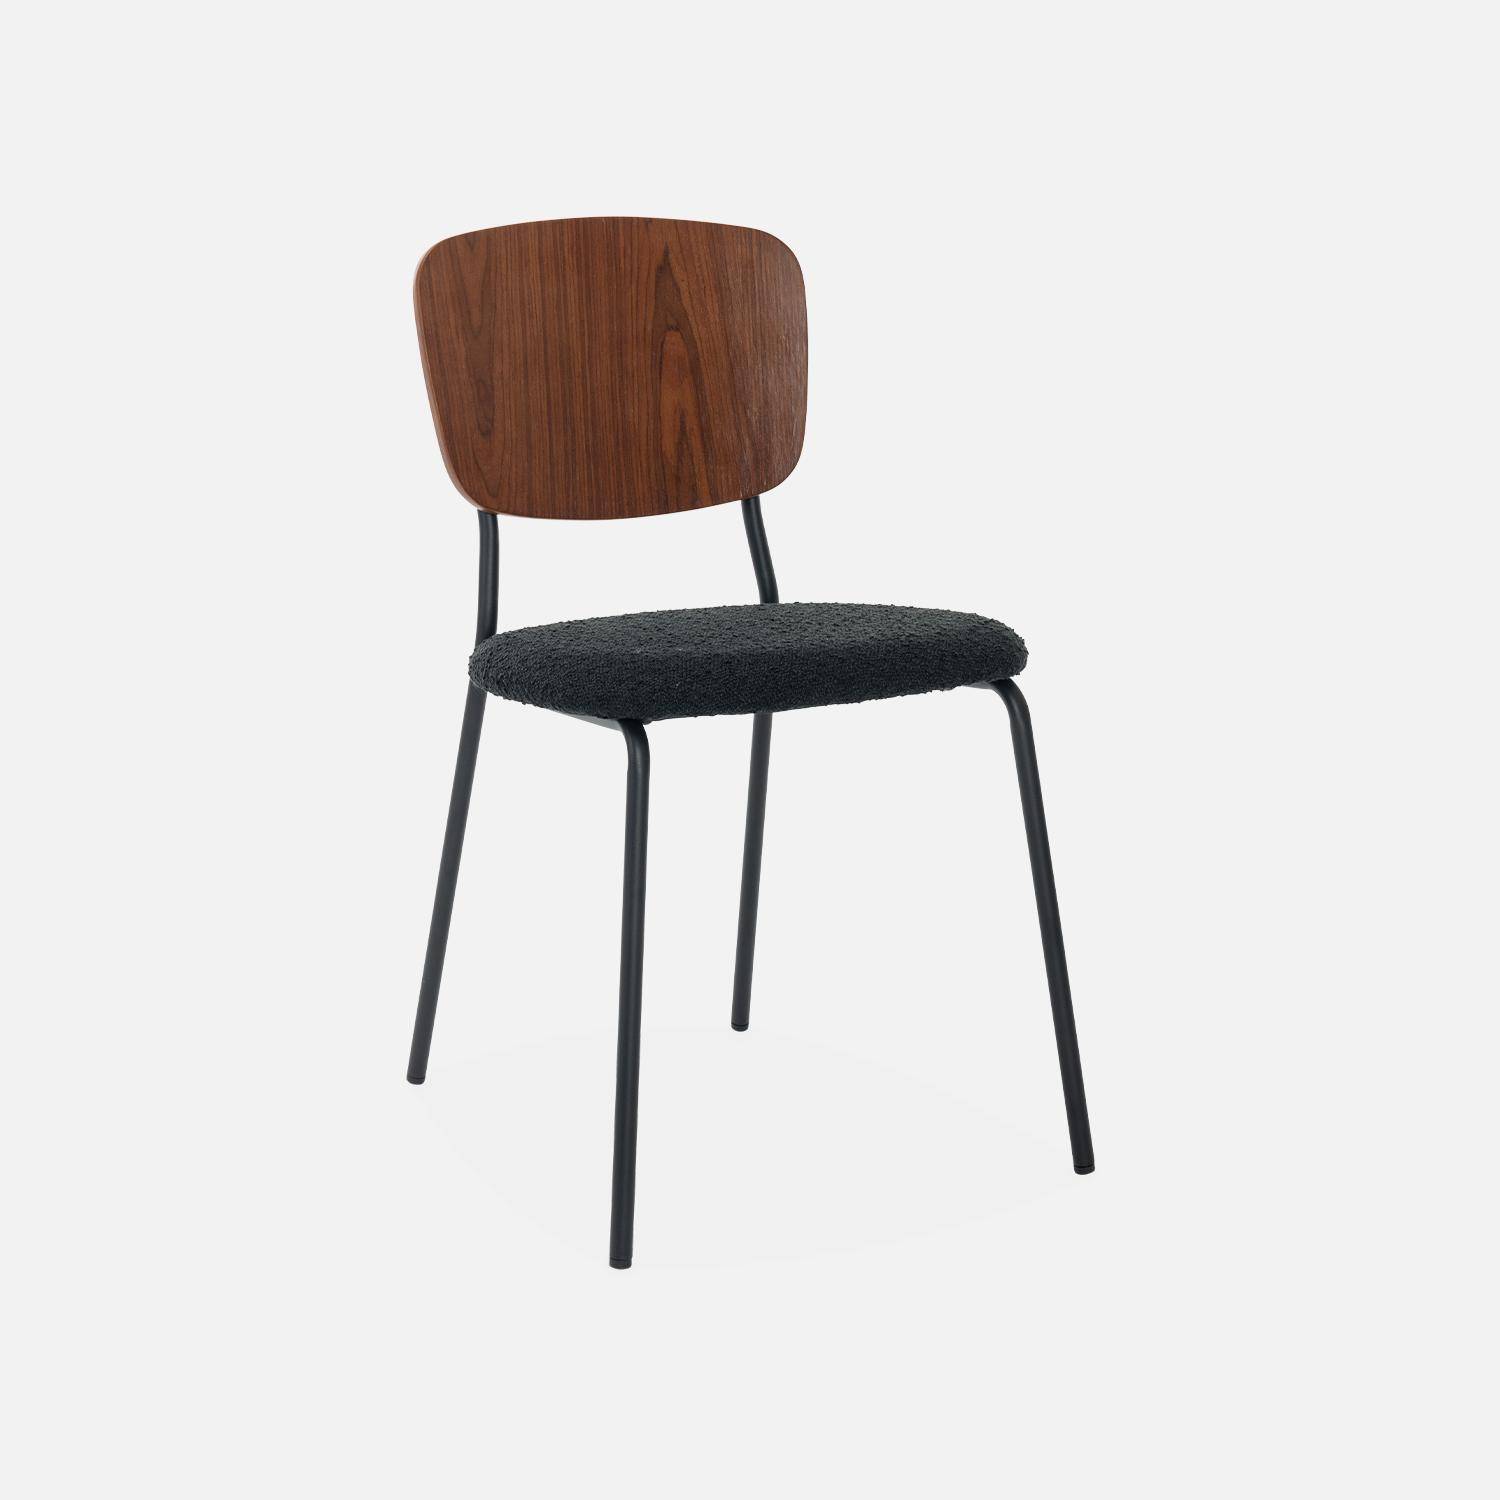 2er Set Stühle mit strukturiertem Bouclé-Sitz in schwarz, Rückenlehne aus gebogenem Pappelholz, Beine aus mattschwarzem Metall,sweeek,Photo4